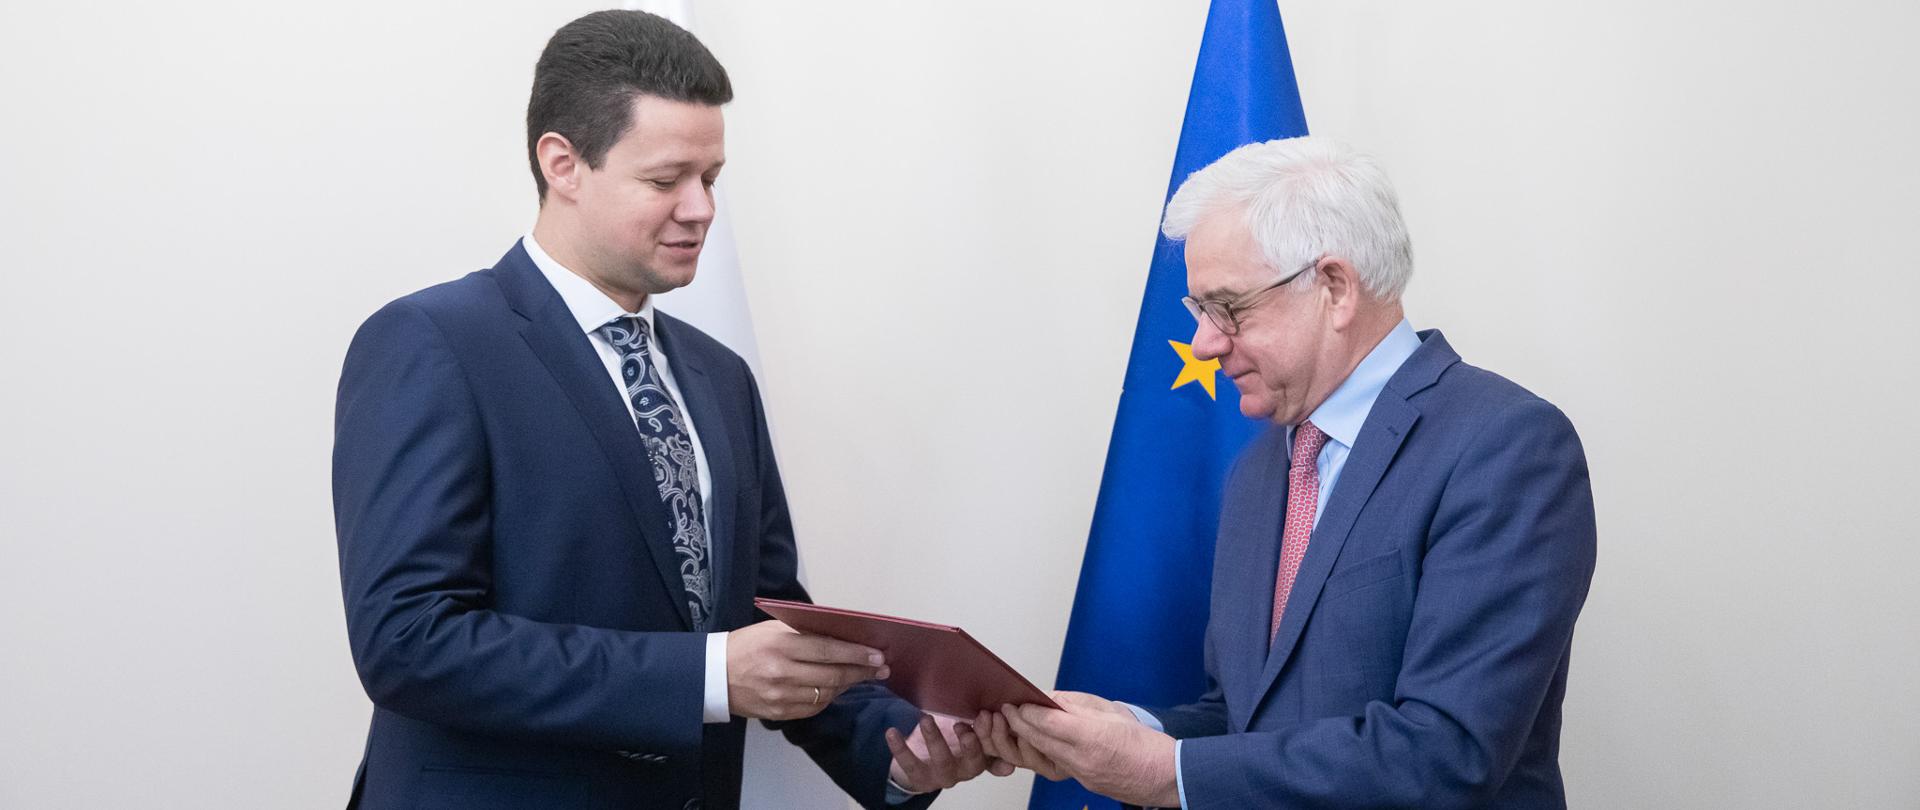 Minister Jacek czaputowicz wręcza Piotrowi Rychlikowi nominację na stanowisko ambasadora w Finlandii